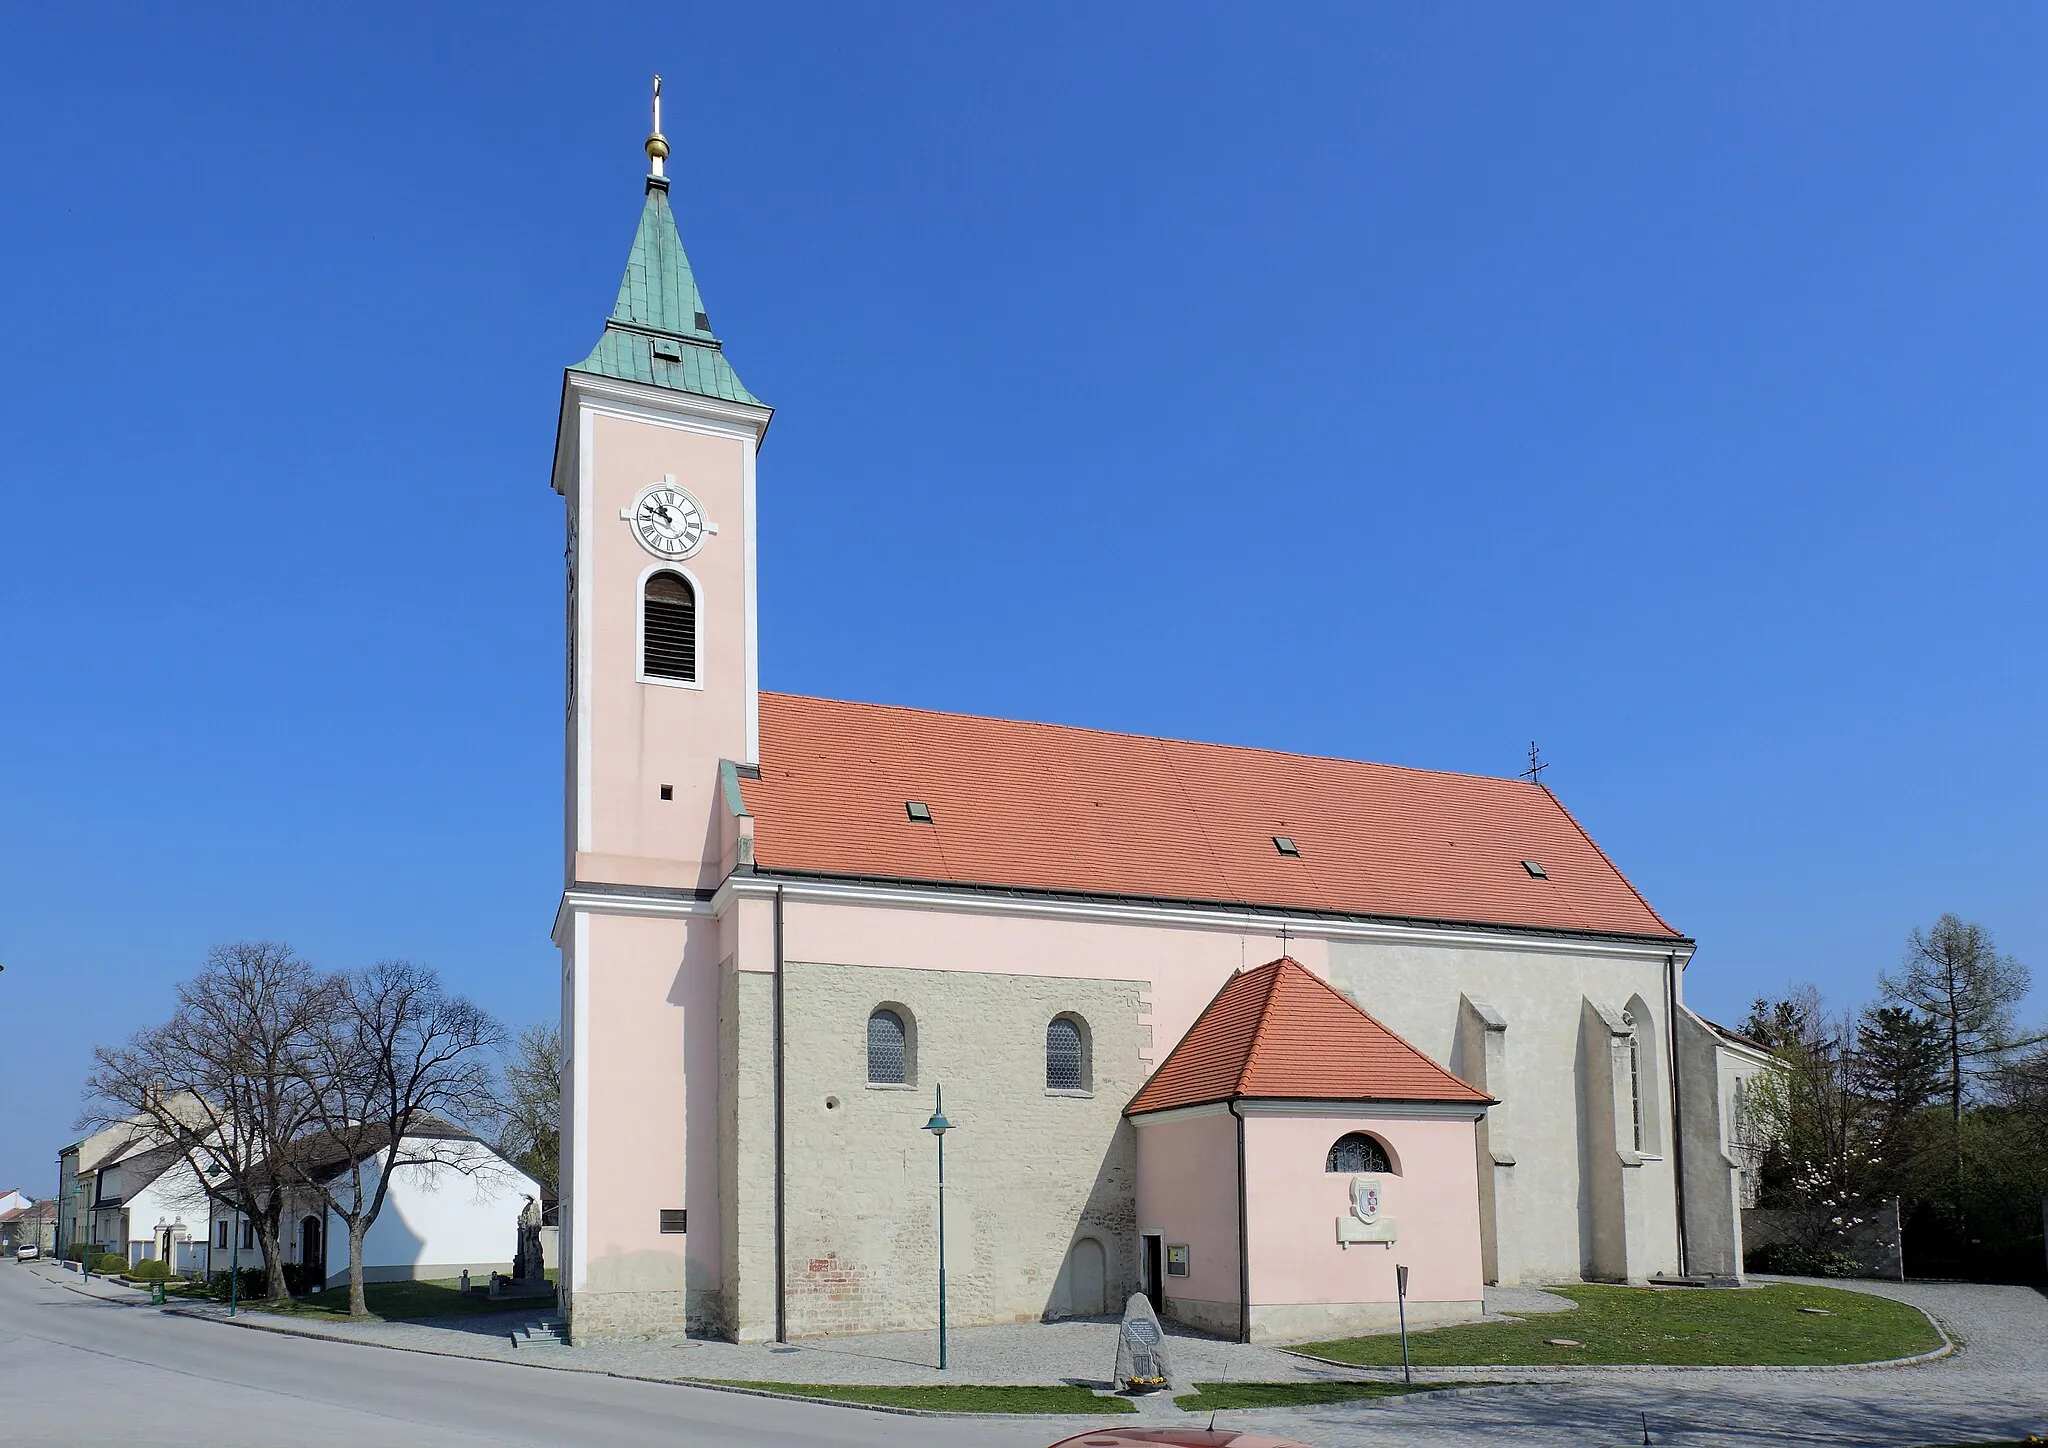 Photo showing: Pfarrkirche hl. Stephan in Probstdorf, ein Ortsteil der niederösterreichischen Stadt Groß-Enzersdorf. Ein Sakralbau, dessen Langhaus in der Kernsubstanz mittelalterlich ist. In der 2. Hälfte des 17. Jahrhunderts wurde der Kirchenbau barockisiert und im Süden sowie im Norden je ein Kapellenanbau errichtet. Der vorgestellte Turm im Westen stammt aus dem Jahr 1802. Der gotische Chor und die Sakristei im Norden sind mit 1418 datiert.